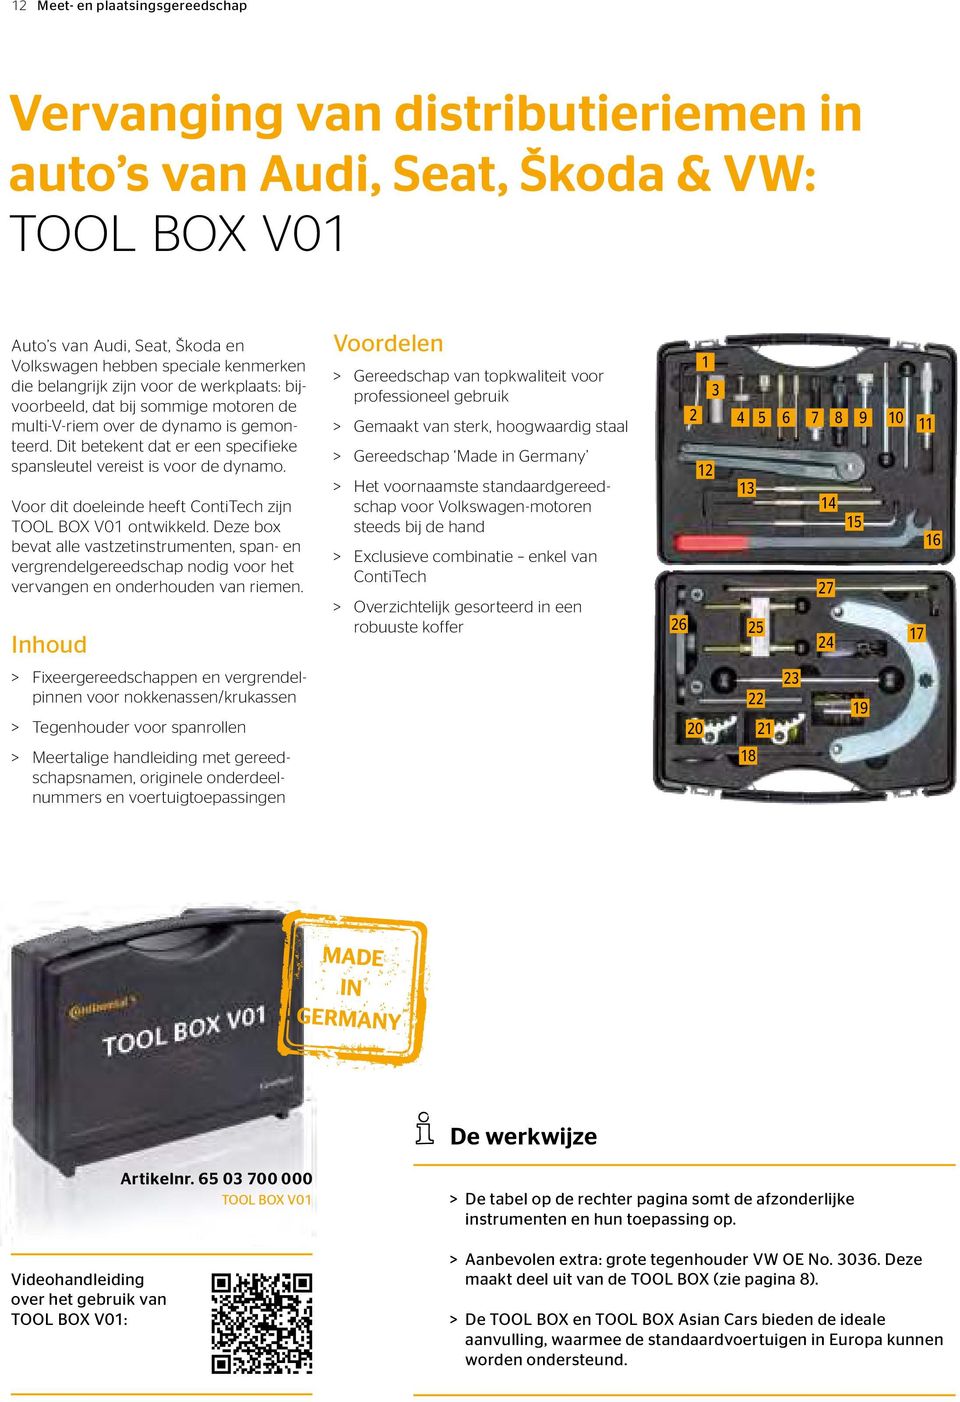 Voor dit doeleinde heeft ContiTech zijn TOOL BOX V01 ontwikkeld. Deze box bevat alle vastzetinstrumenten, span- en vergrendelgereedschap nodig voor het vervangen en onderhouden van riemen.